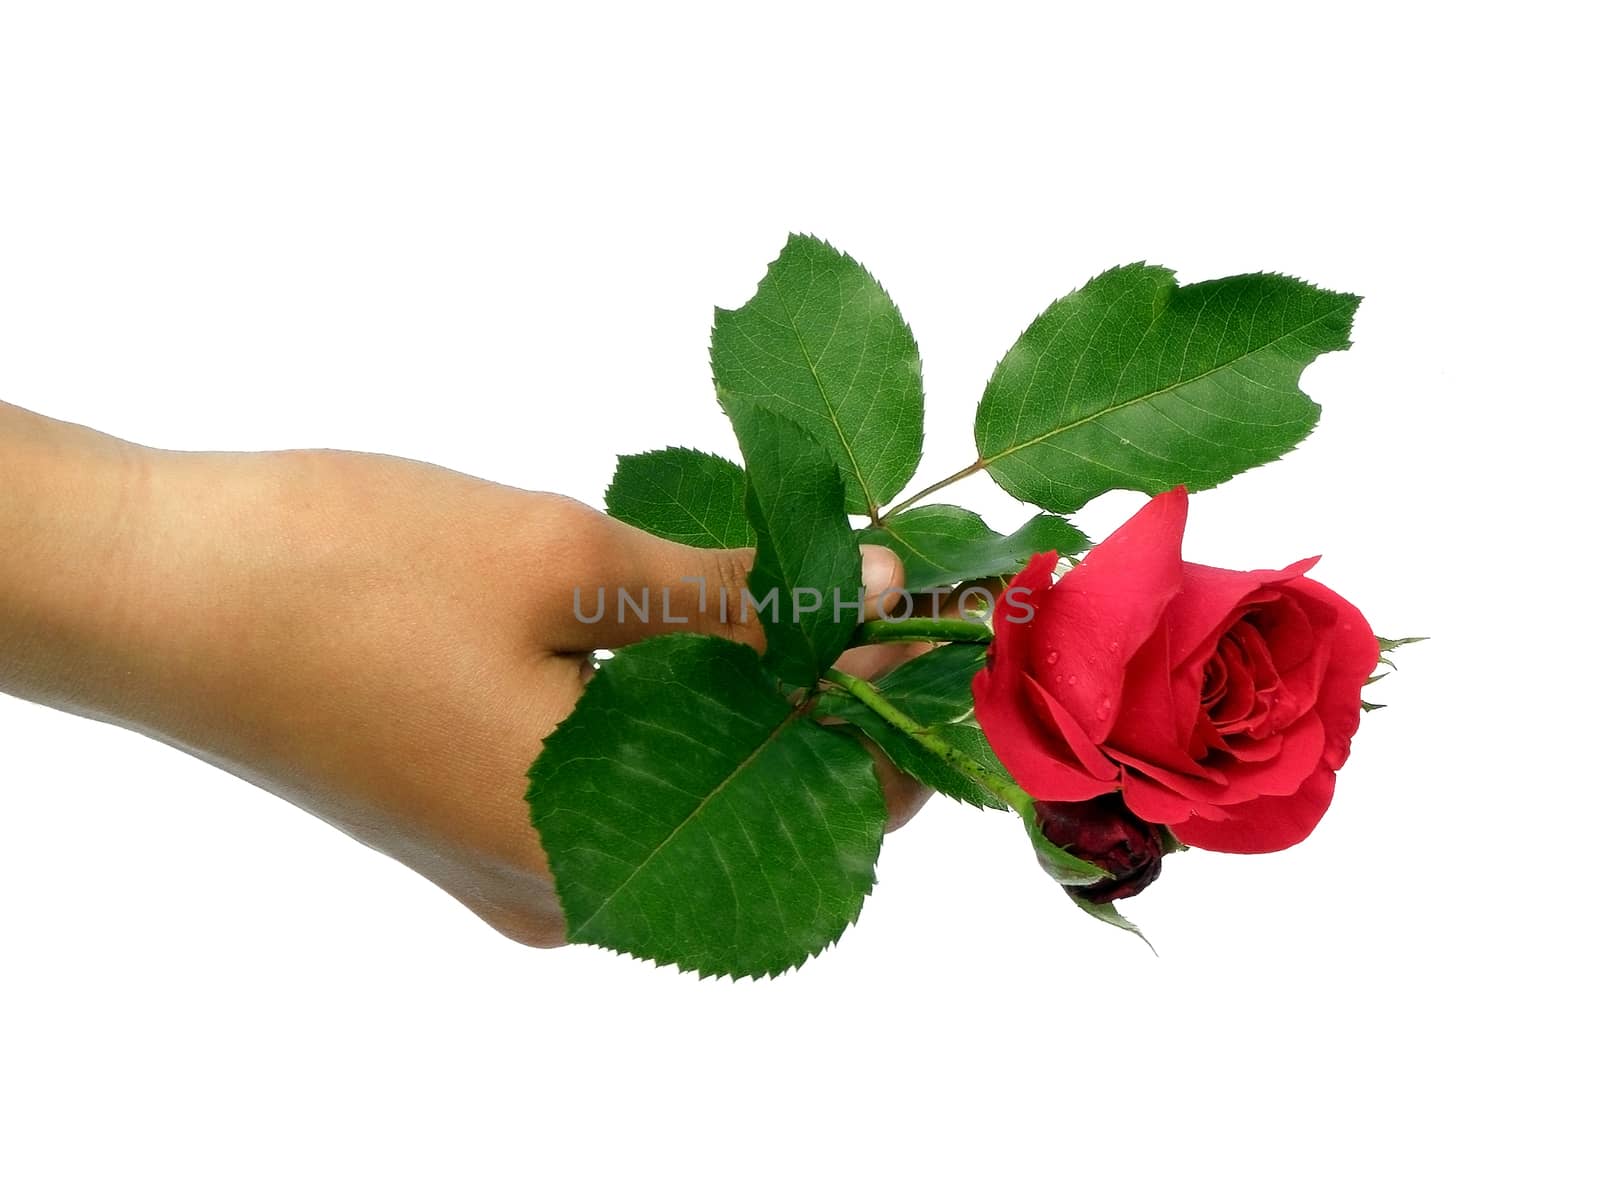  A single rose. by dadalia